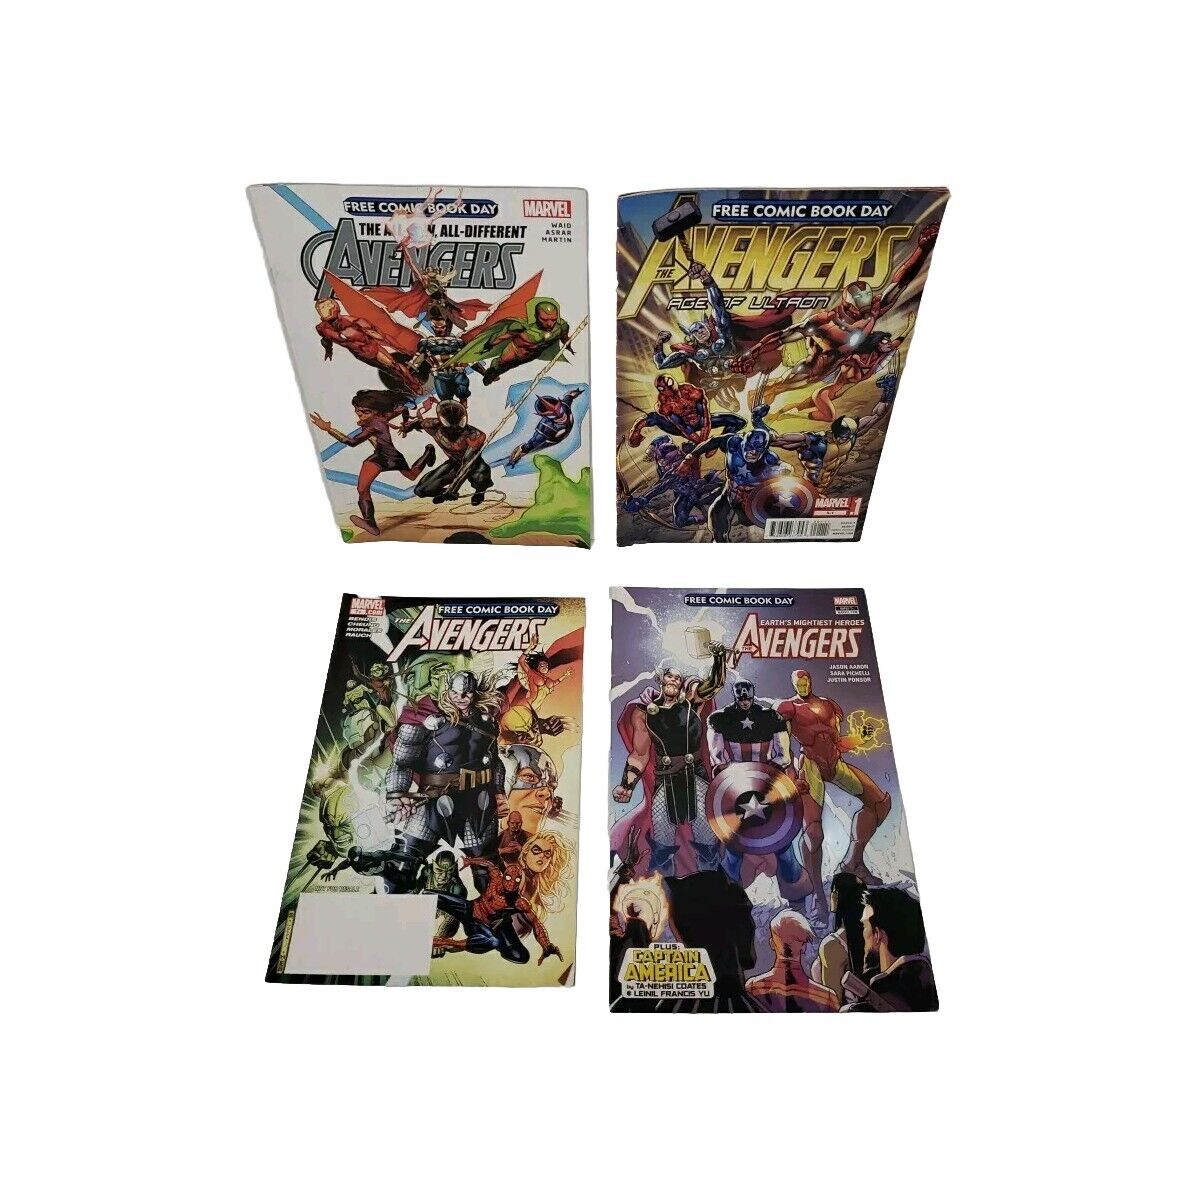 FCBD 2015 Avengers #1 All New All Different Avengers + 2007, 2012 & 2018 Marvel